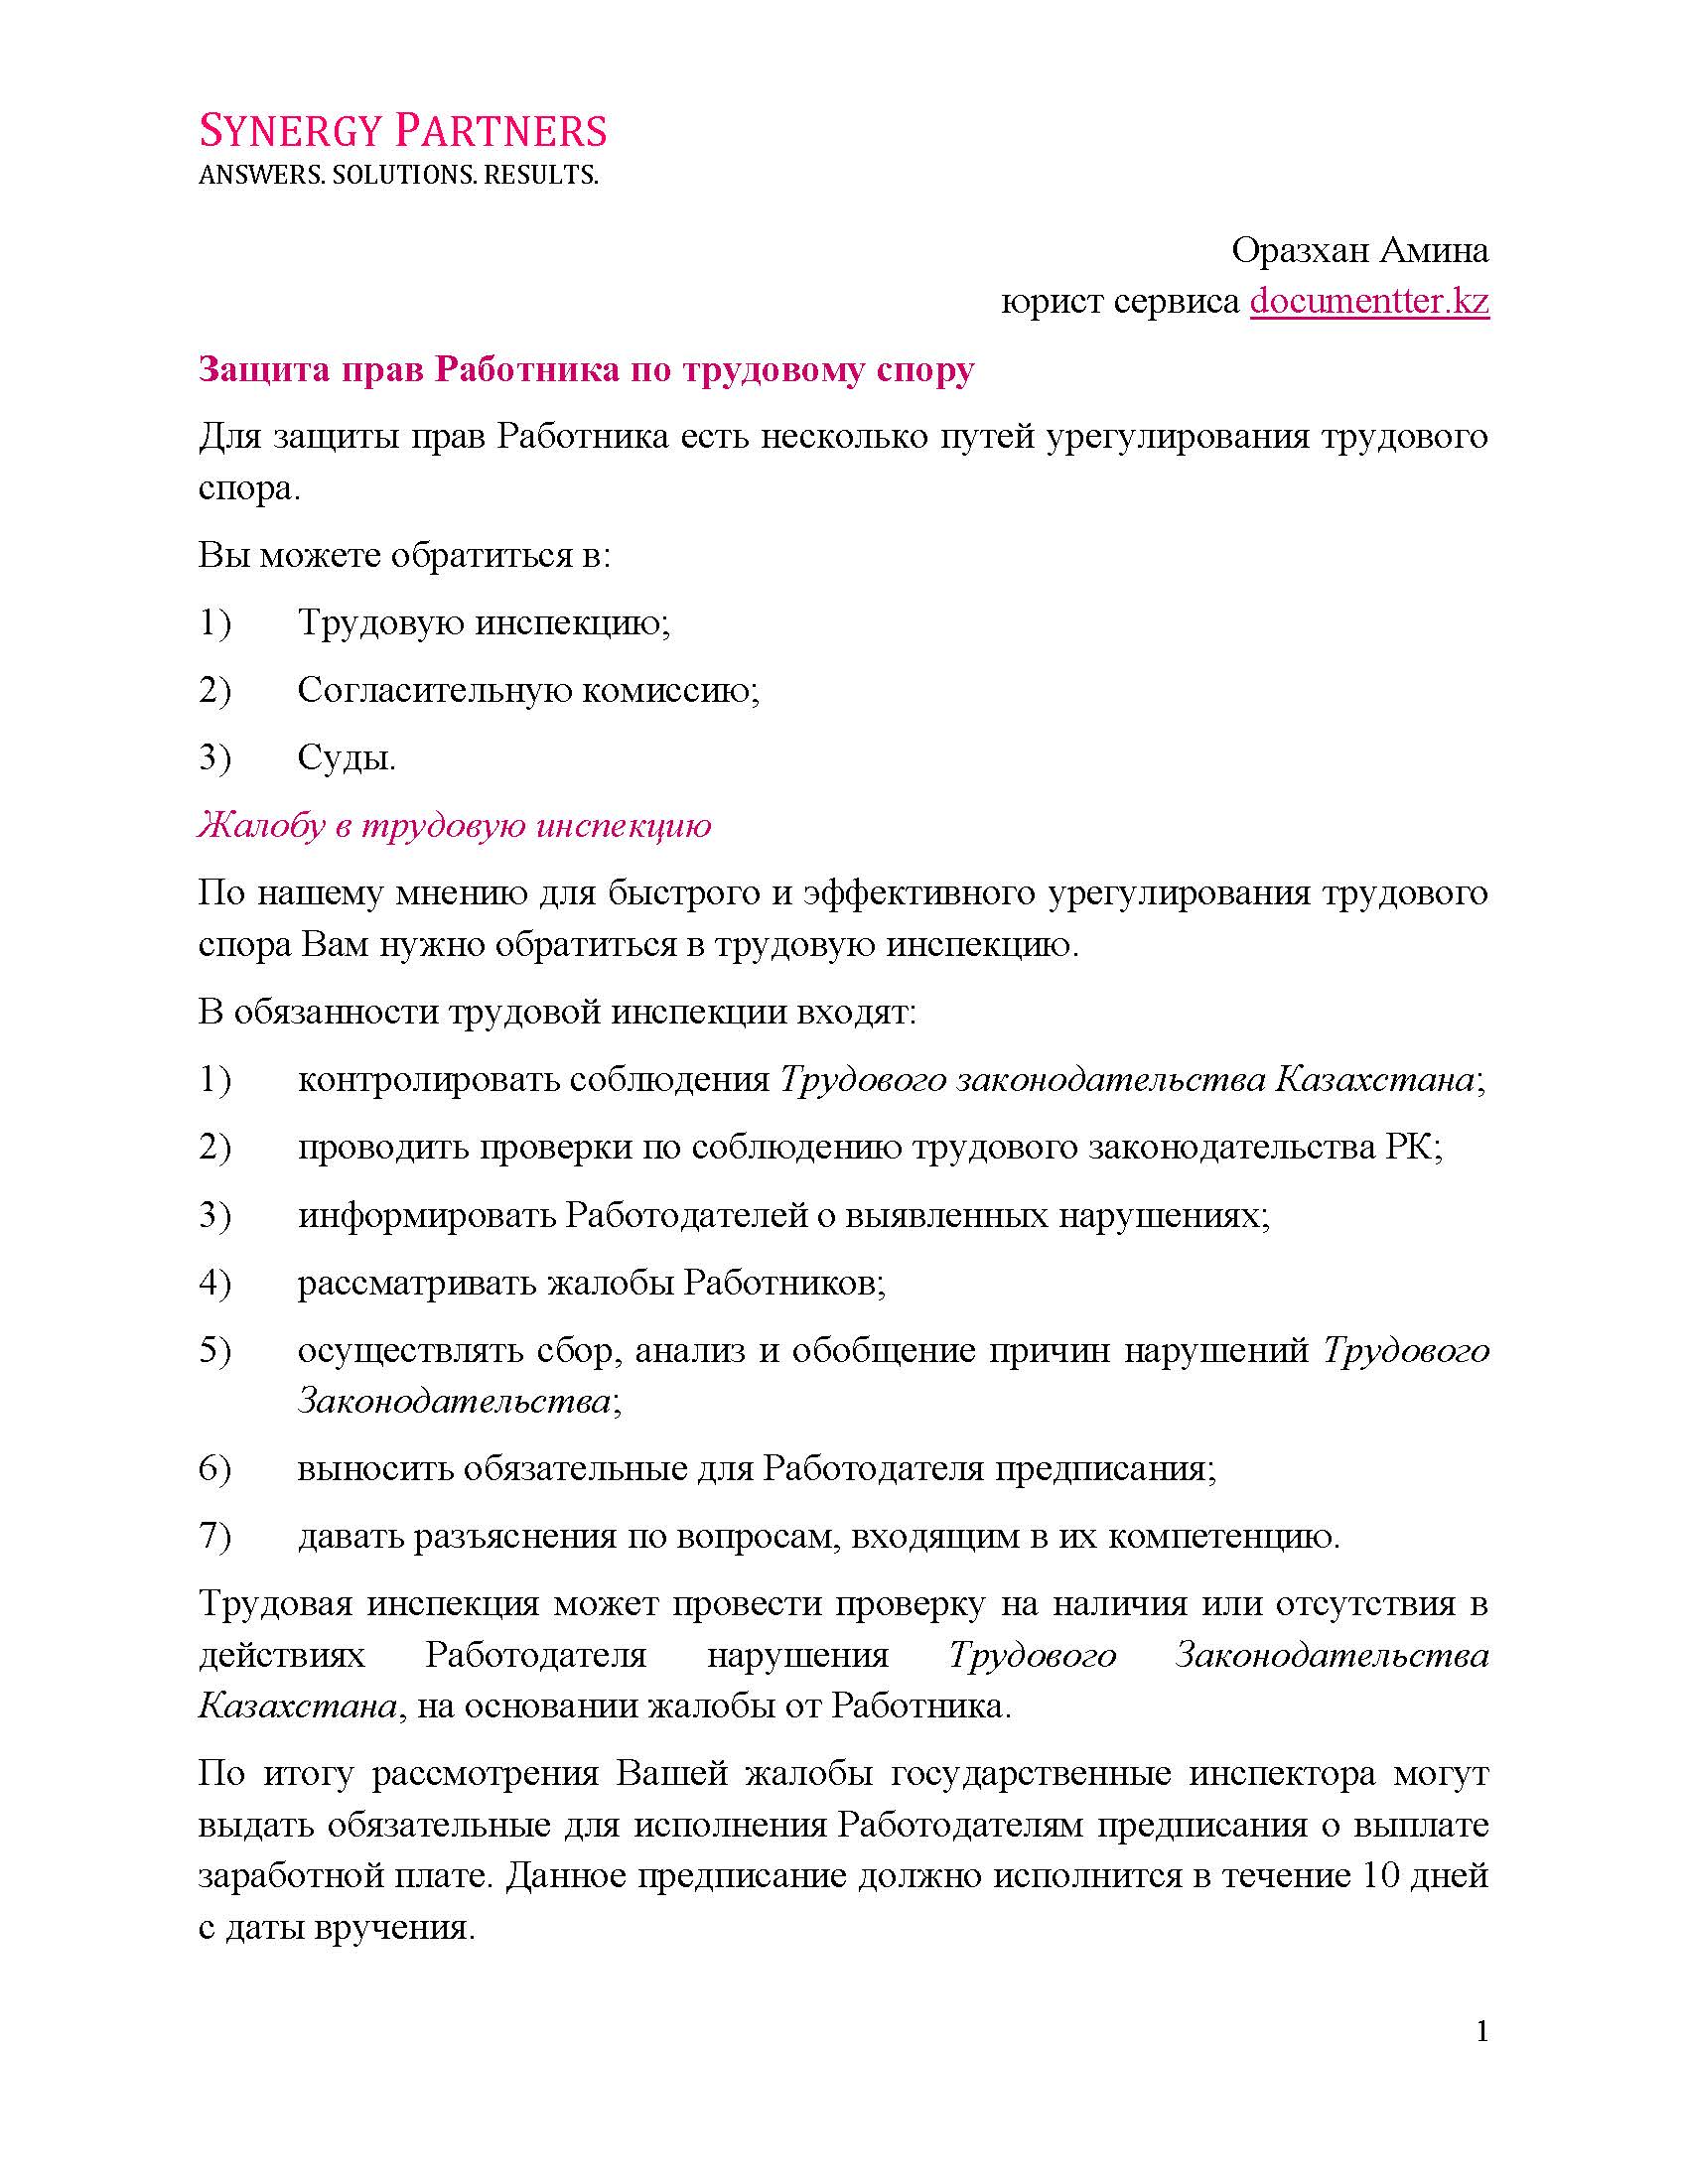 Защита прав работника описание  | documentter.kz в Казахстане 